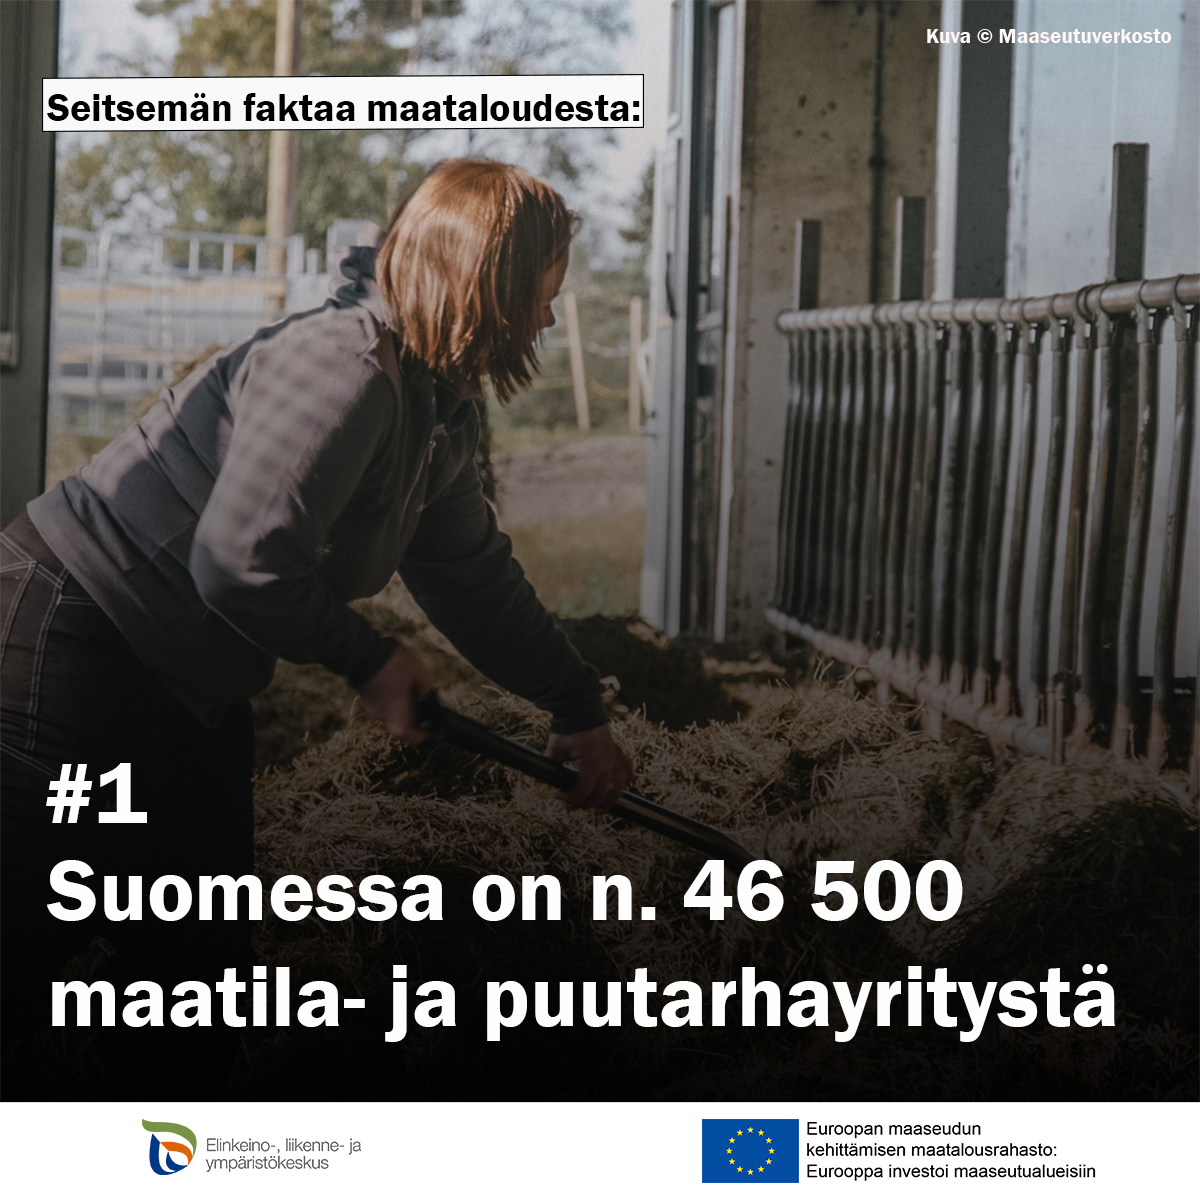 Nainen navettatöissä. Teksti: seitsemän faktaa maataloudesta #1 Suomessa on 46 500 määrä maatila- ja puutarhayritystä